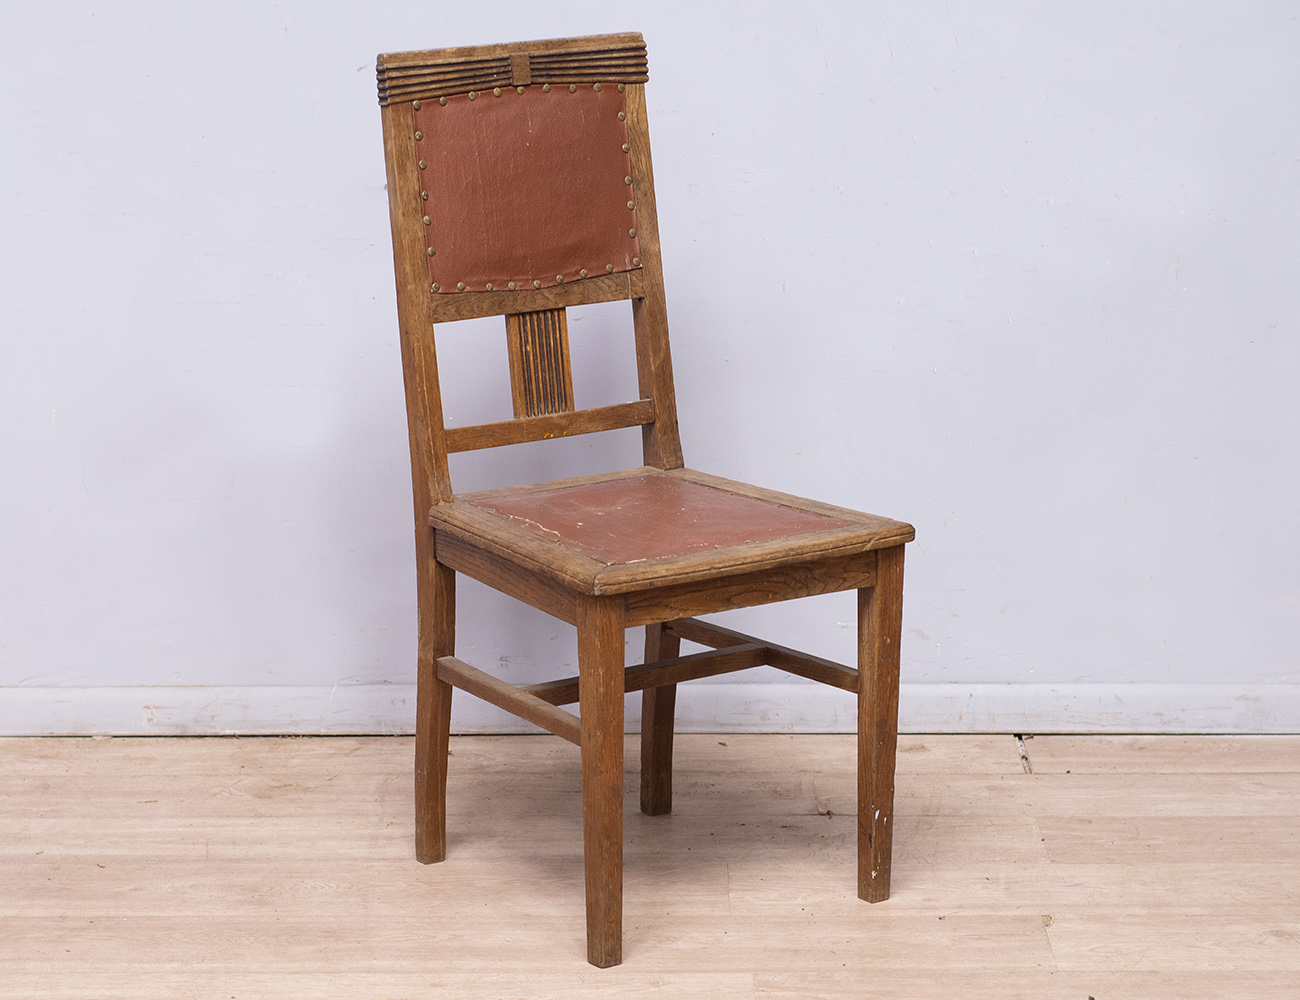 Дубовый стул старинный Лютер Ревель. Дубовый стул Модерн. Стул из дуба. Старый дубовый стул. Стул из дуба купить